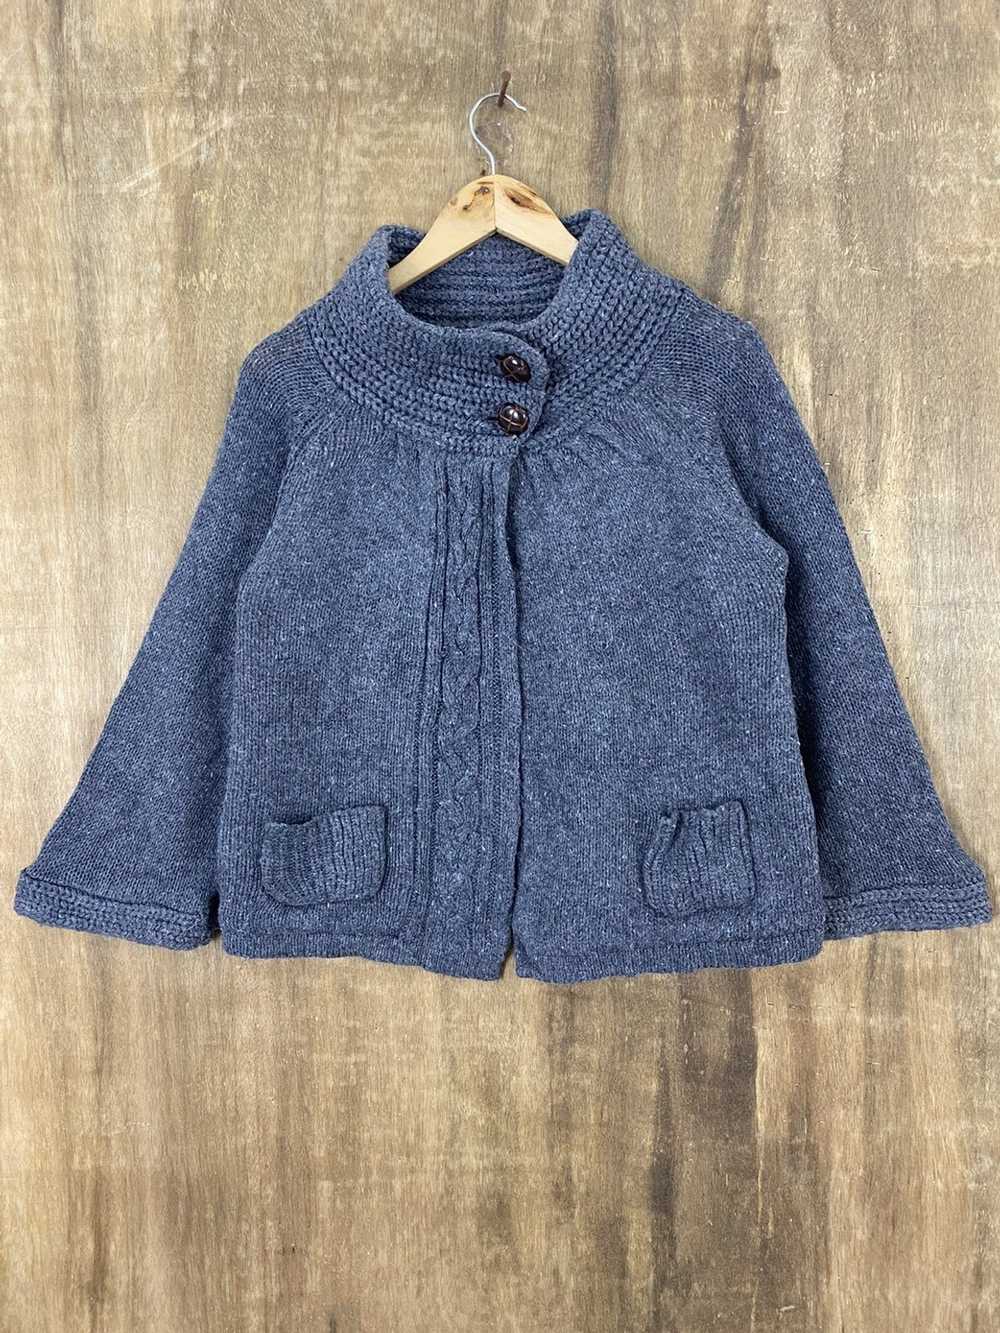 Aran Isles Knitwear × Cardigan × Japanese Brand M… - image 1